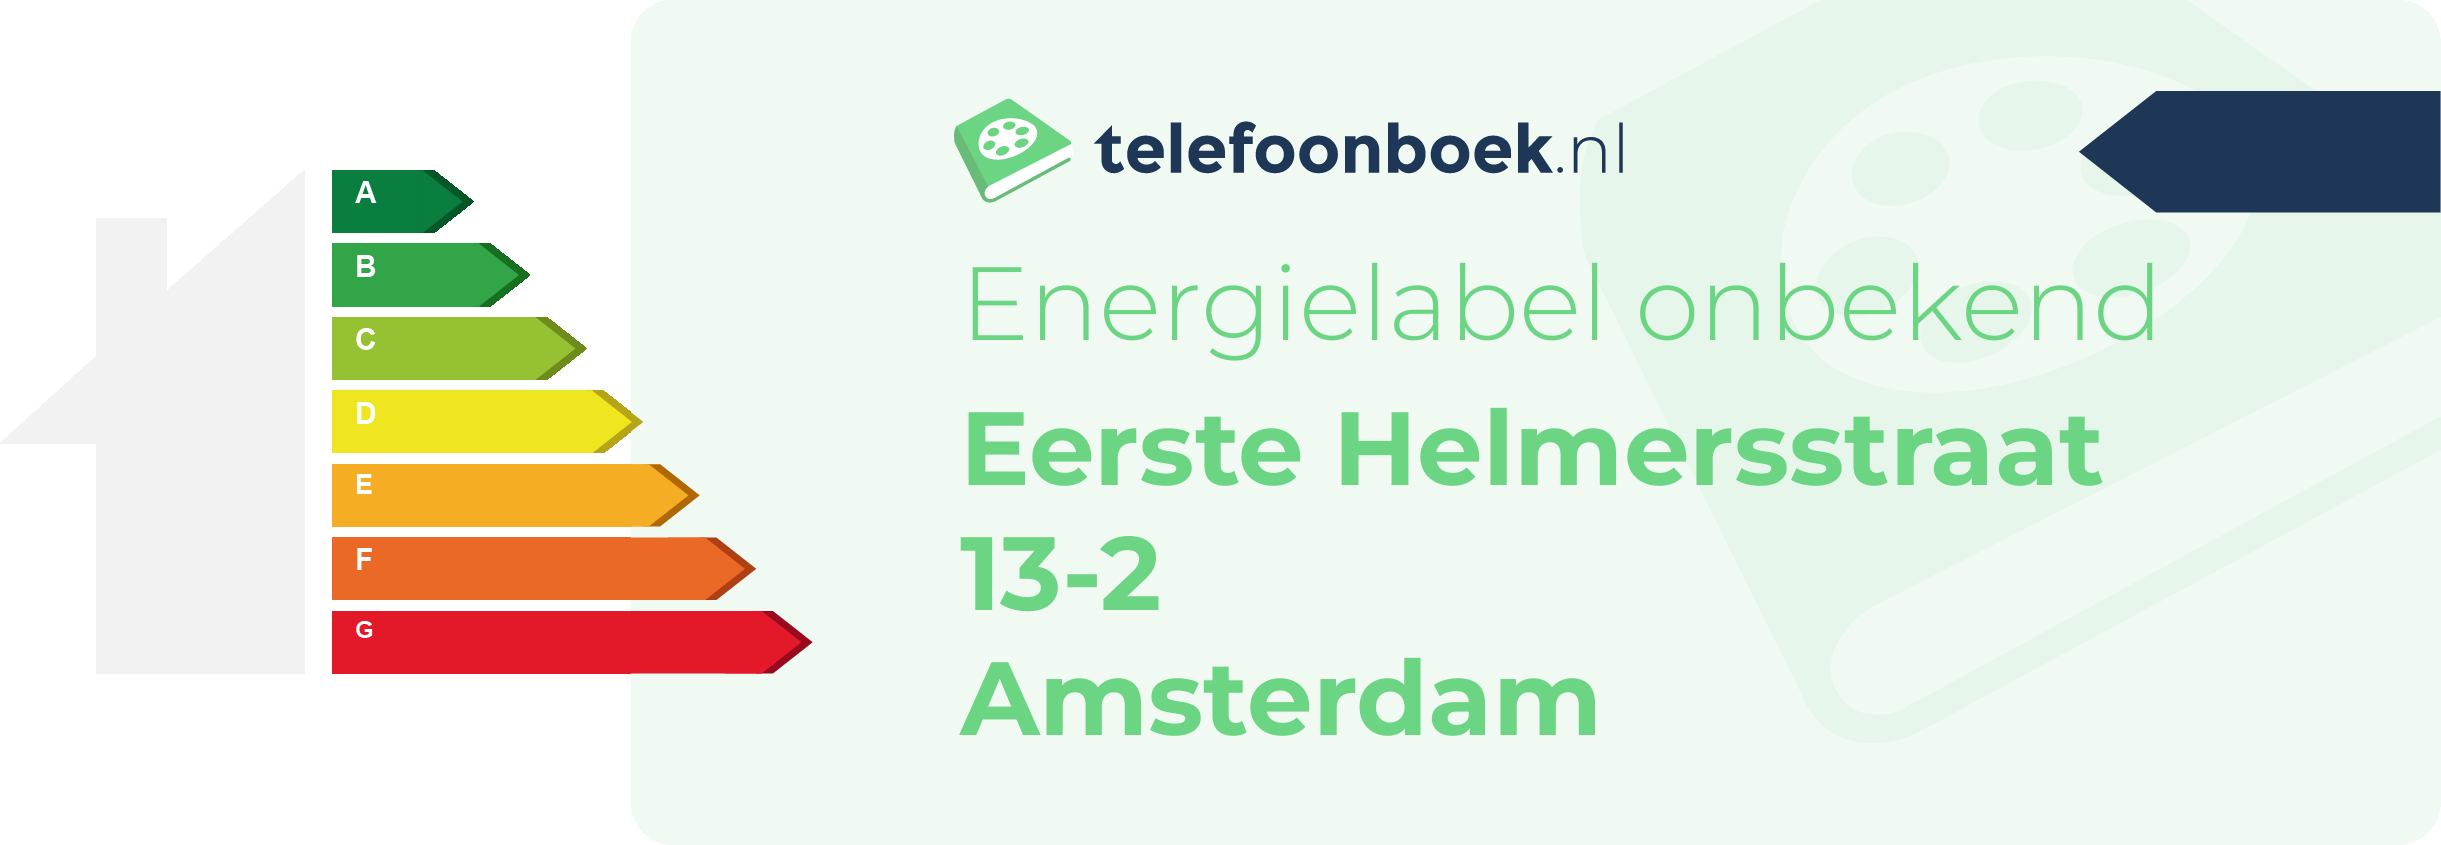 Energielabel Eerste Helmersstraat 13-2 Amsterdam